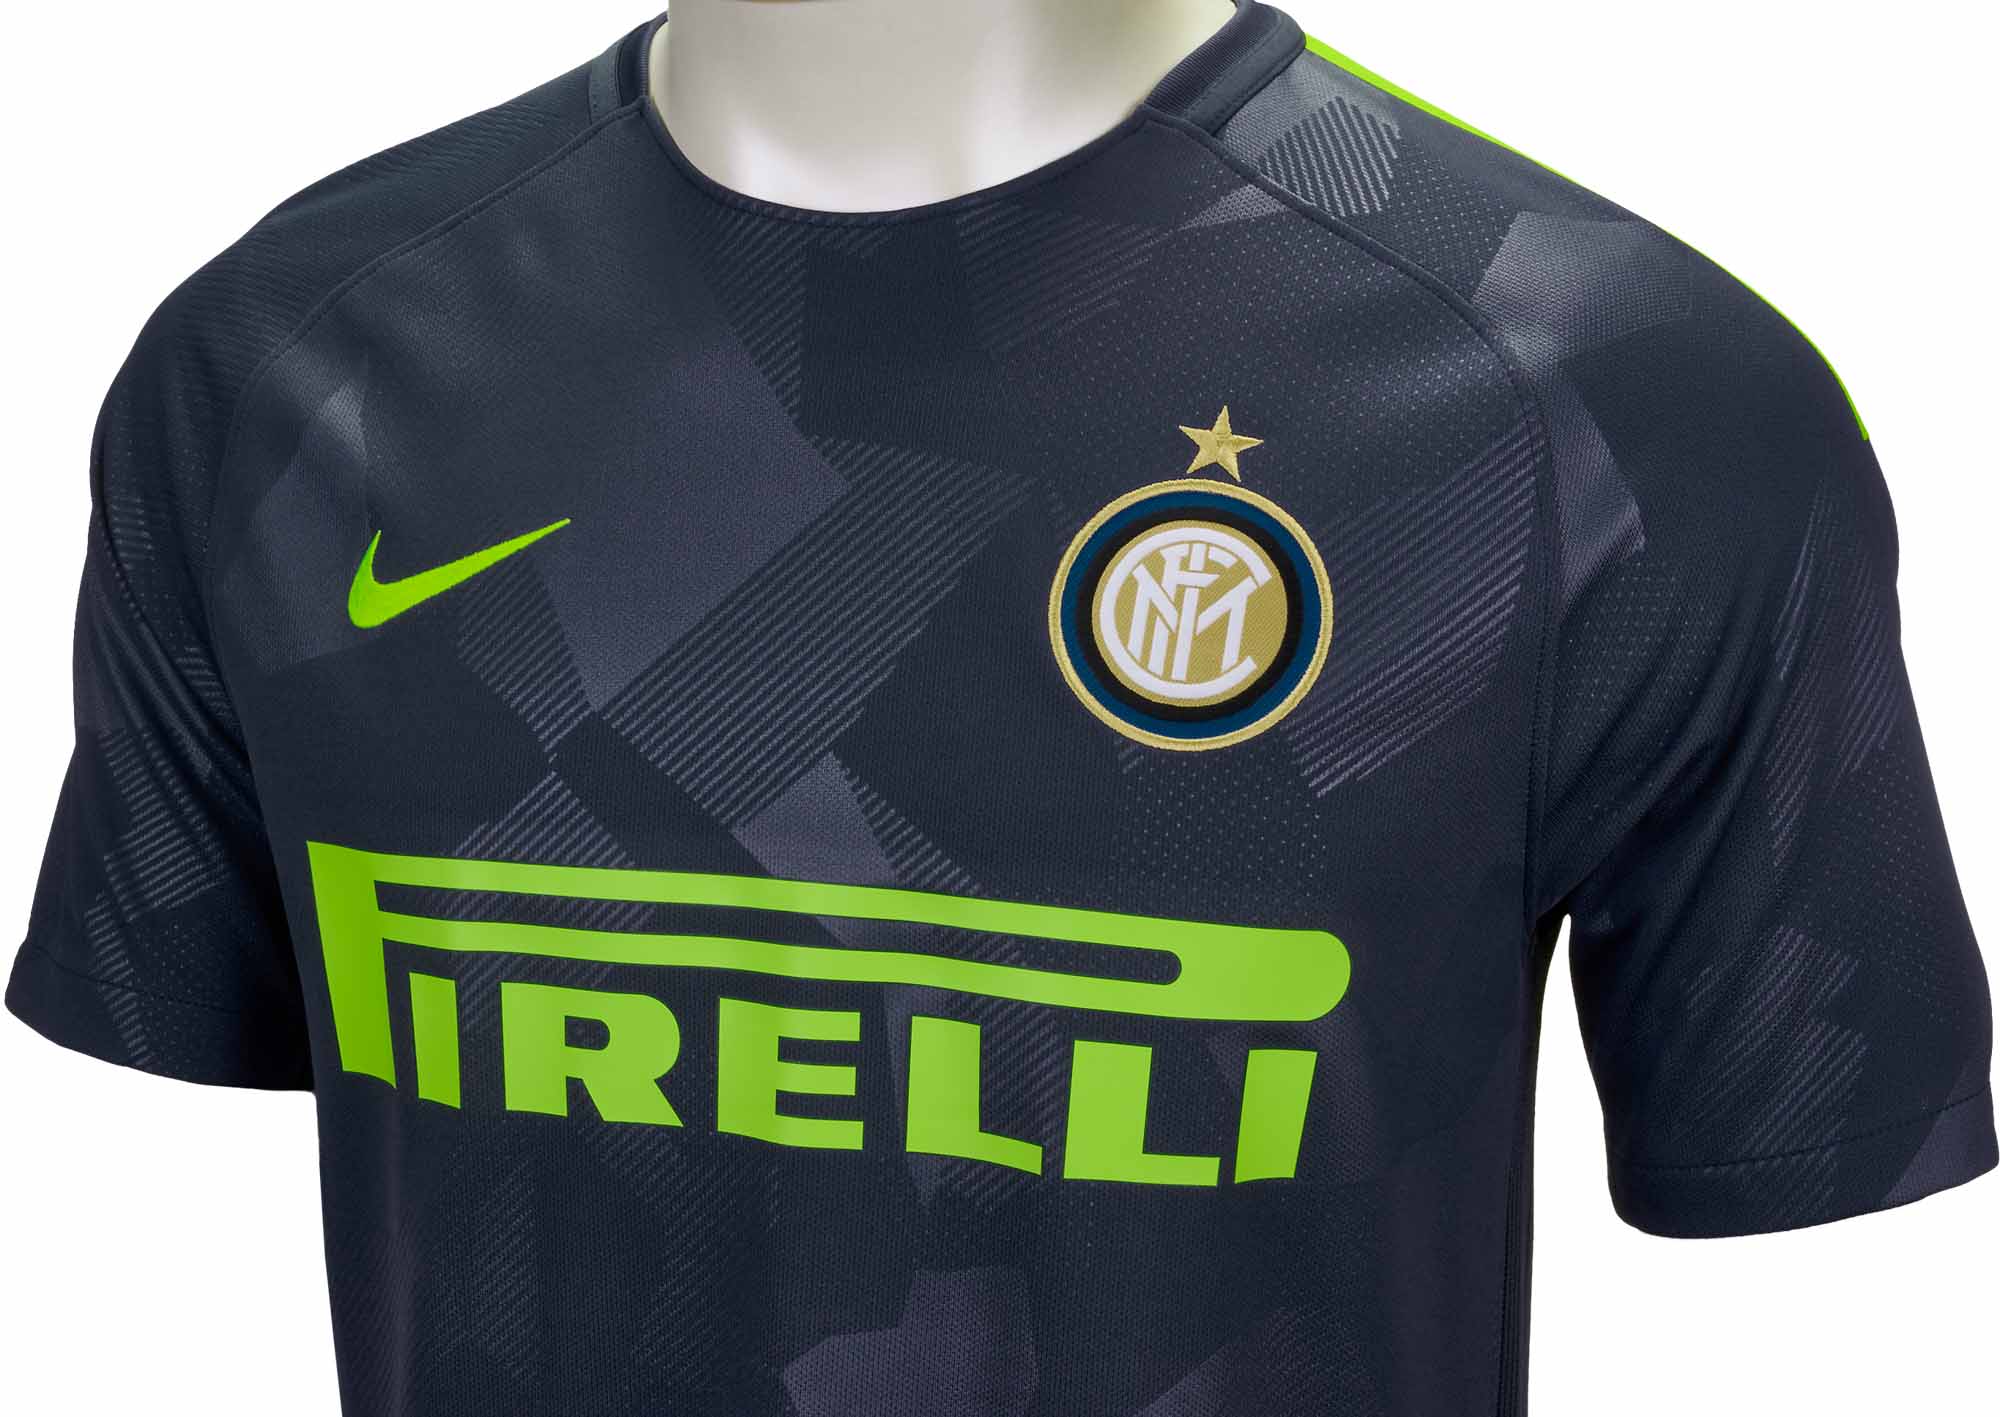 Nike Inter Milan 17/18 Away Jersey